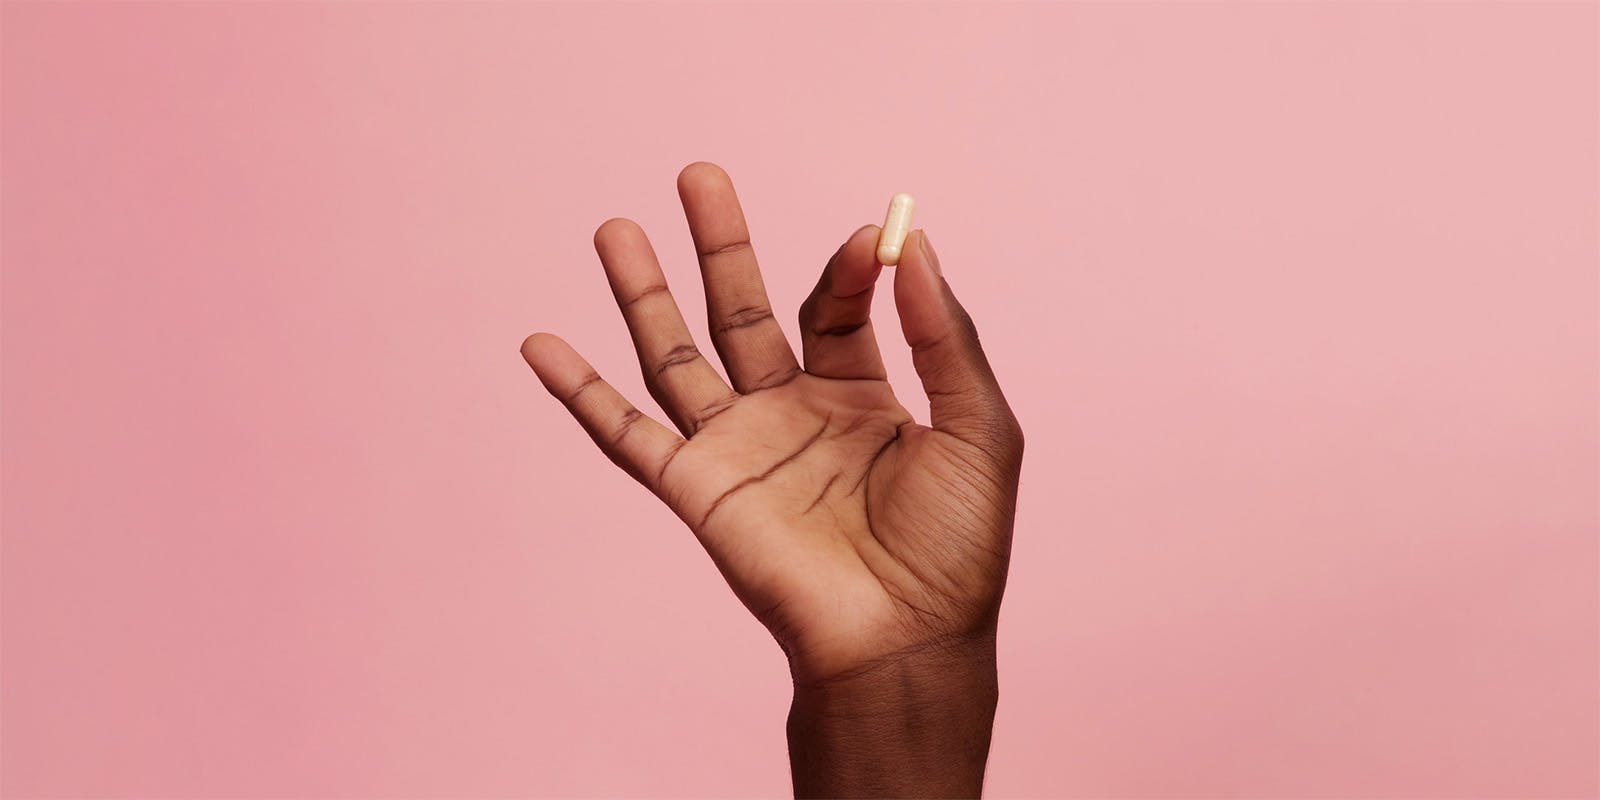 Una mano femenina oscura que sostiene una pastilla apretada entre el índice y el pulgar